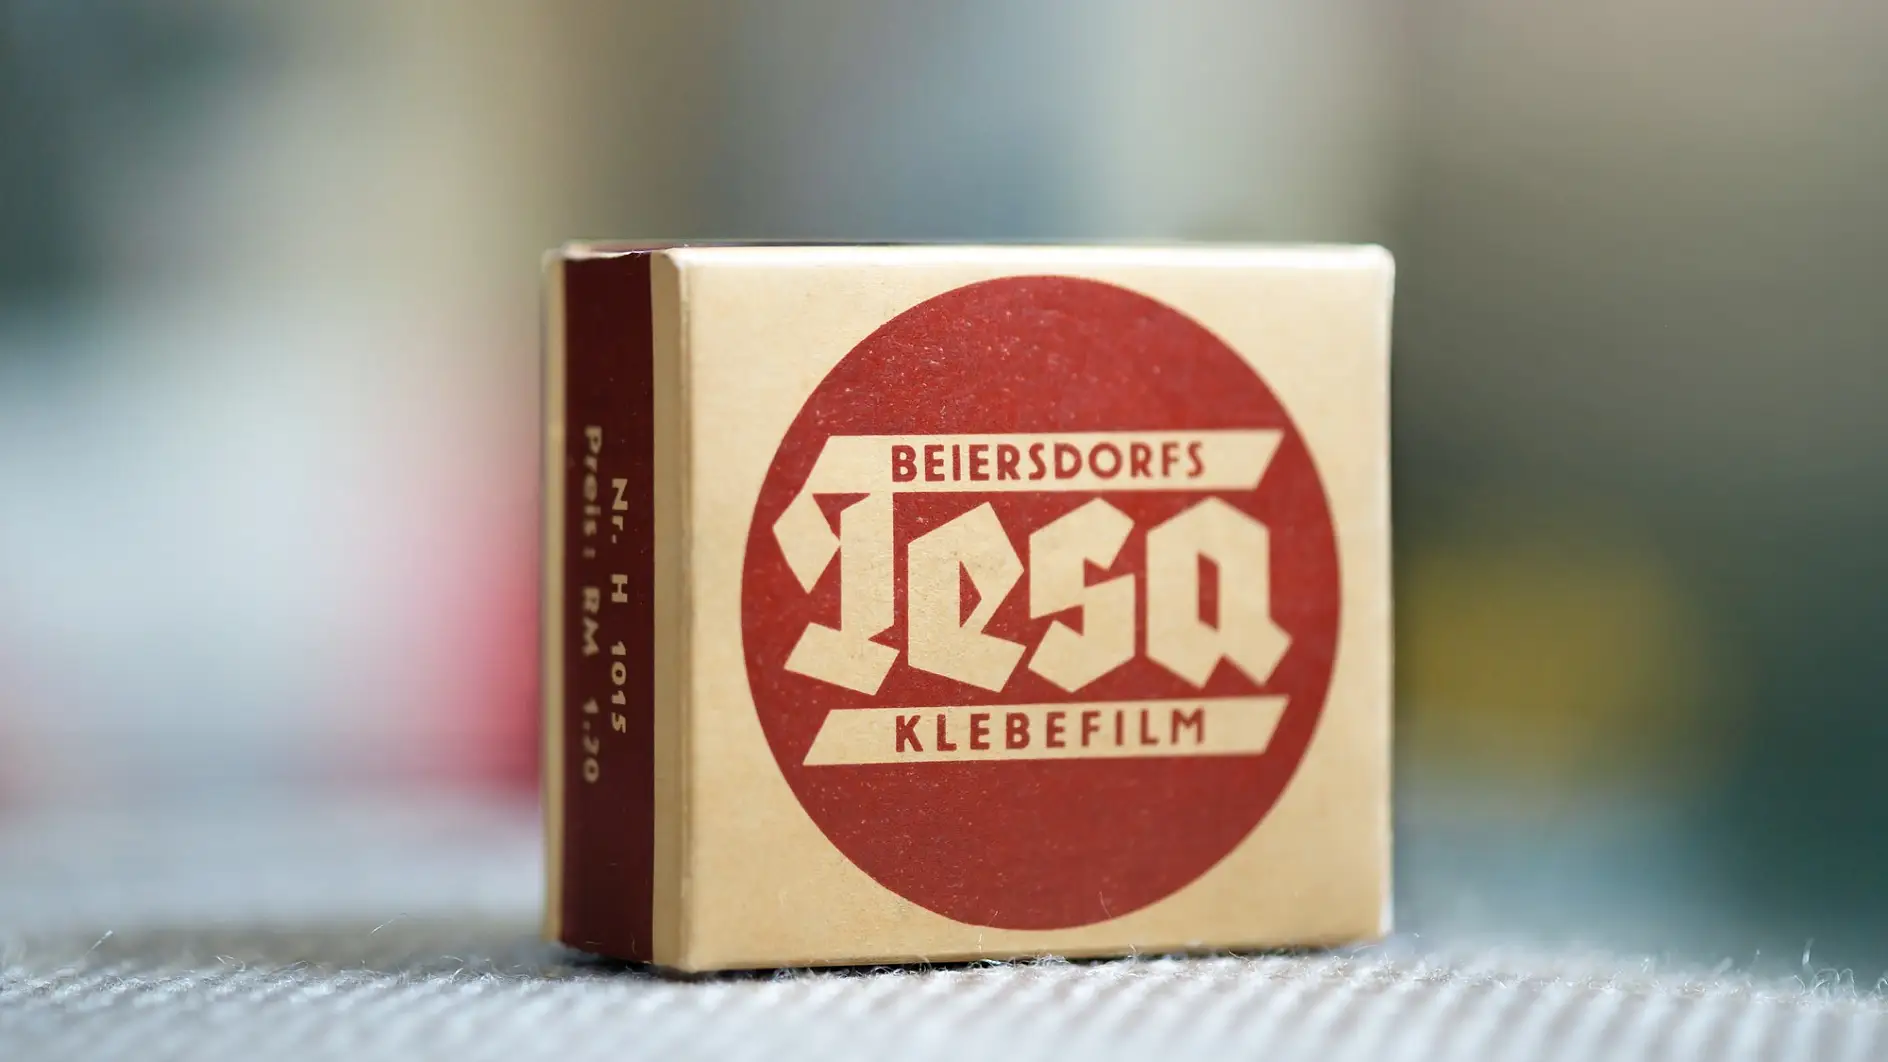 O nosso produto clássico tesafilm® numa embalagem de 1936.